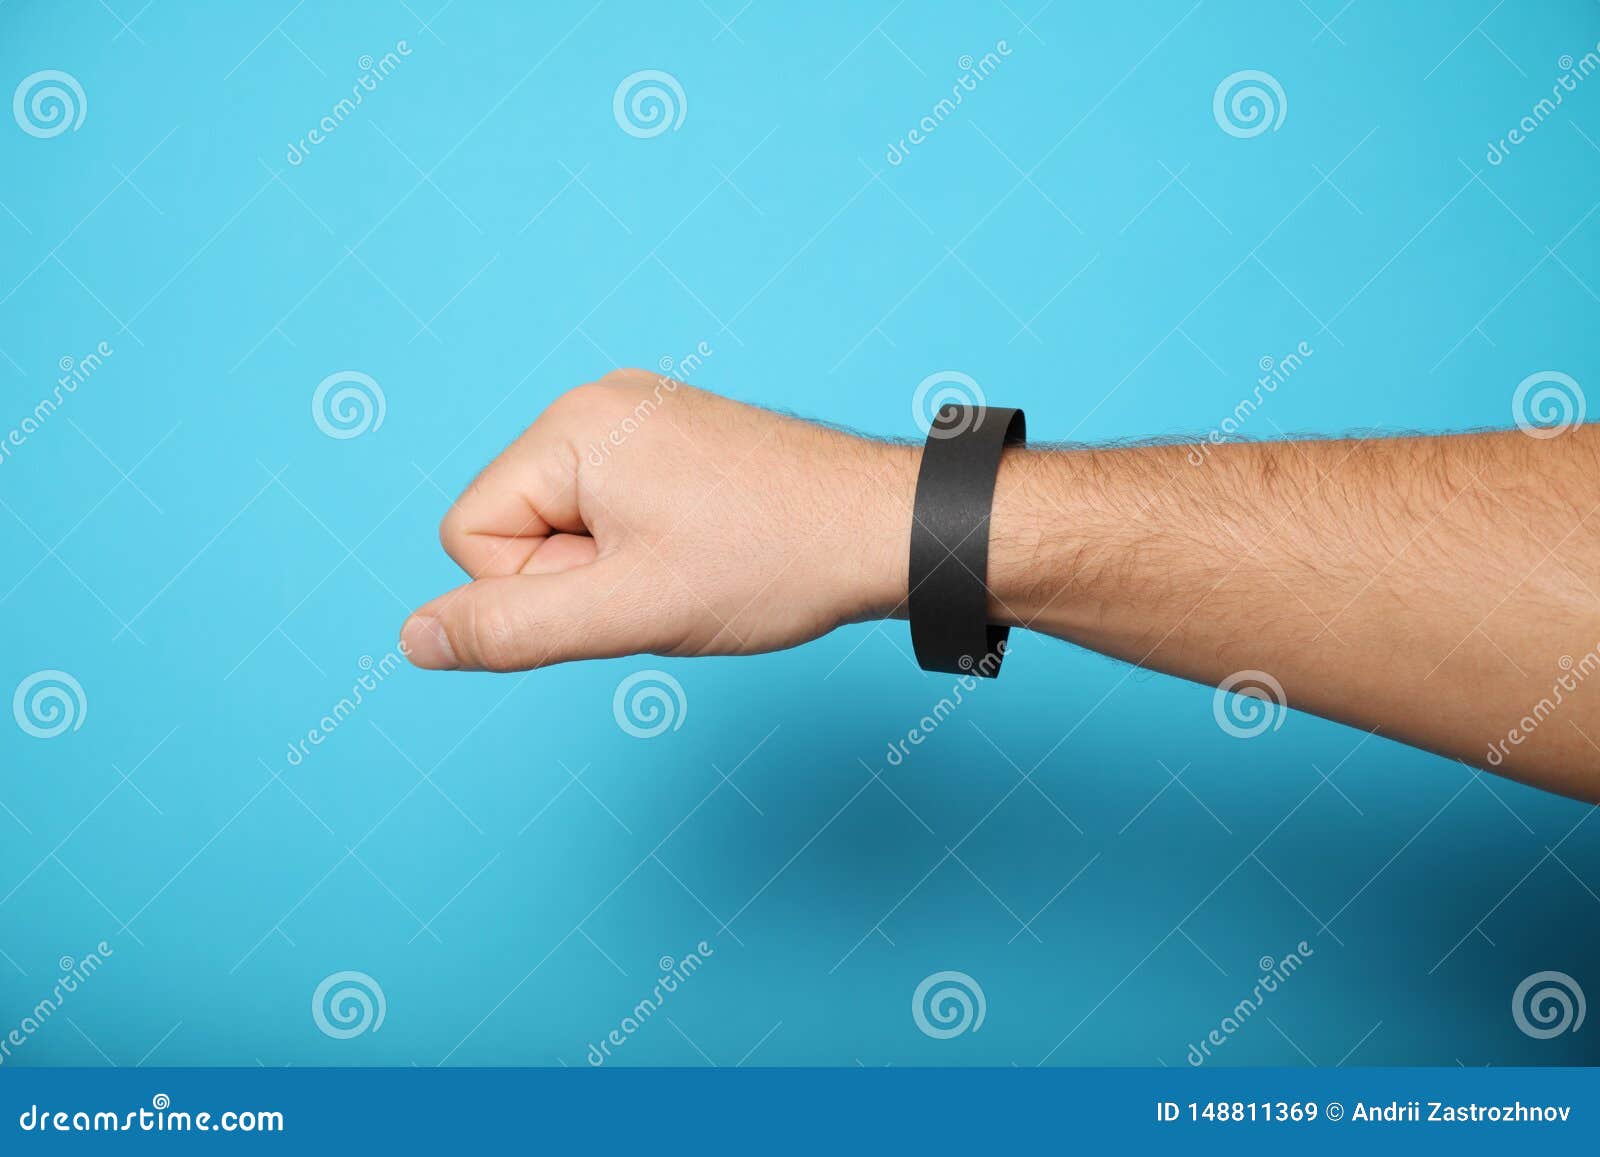 Download Concert Wristband Mockup, Black Hospital Bracelet Design ...